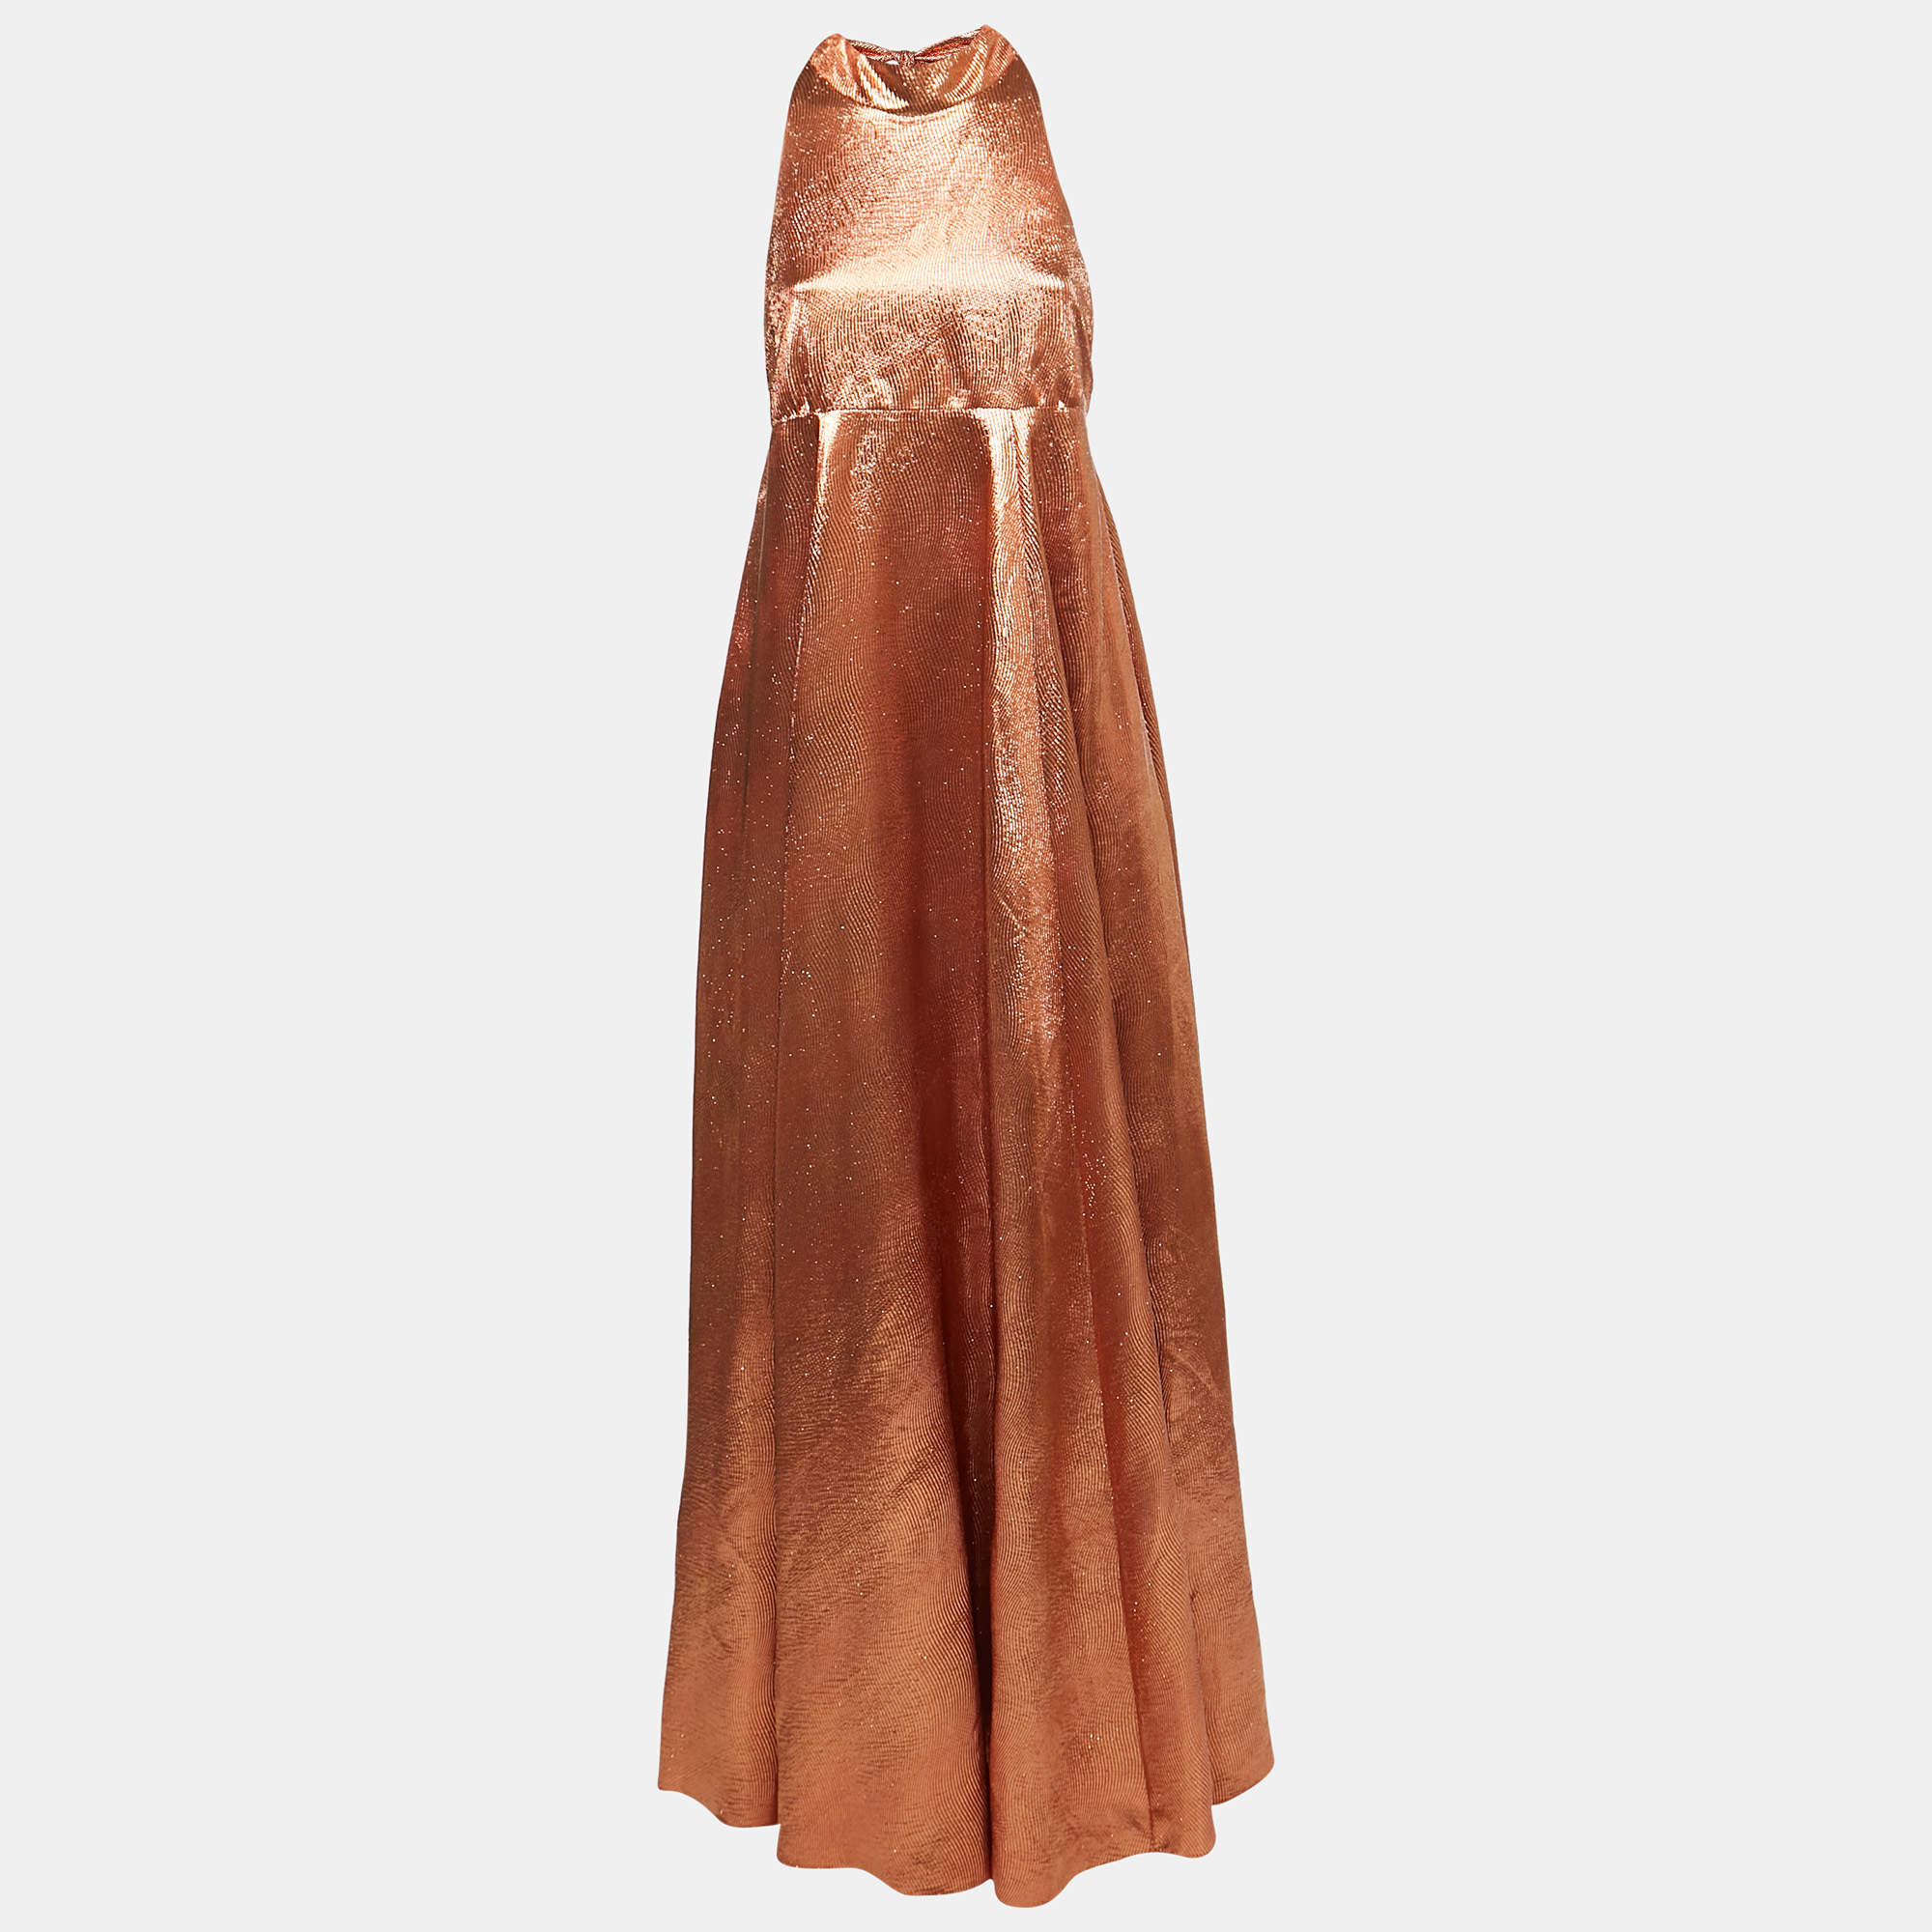 Christian Dior Orange Texture Lurex Halter Neck Gown M Dior | The ...